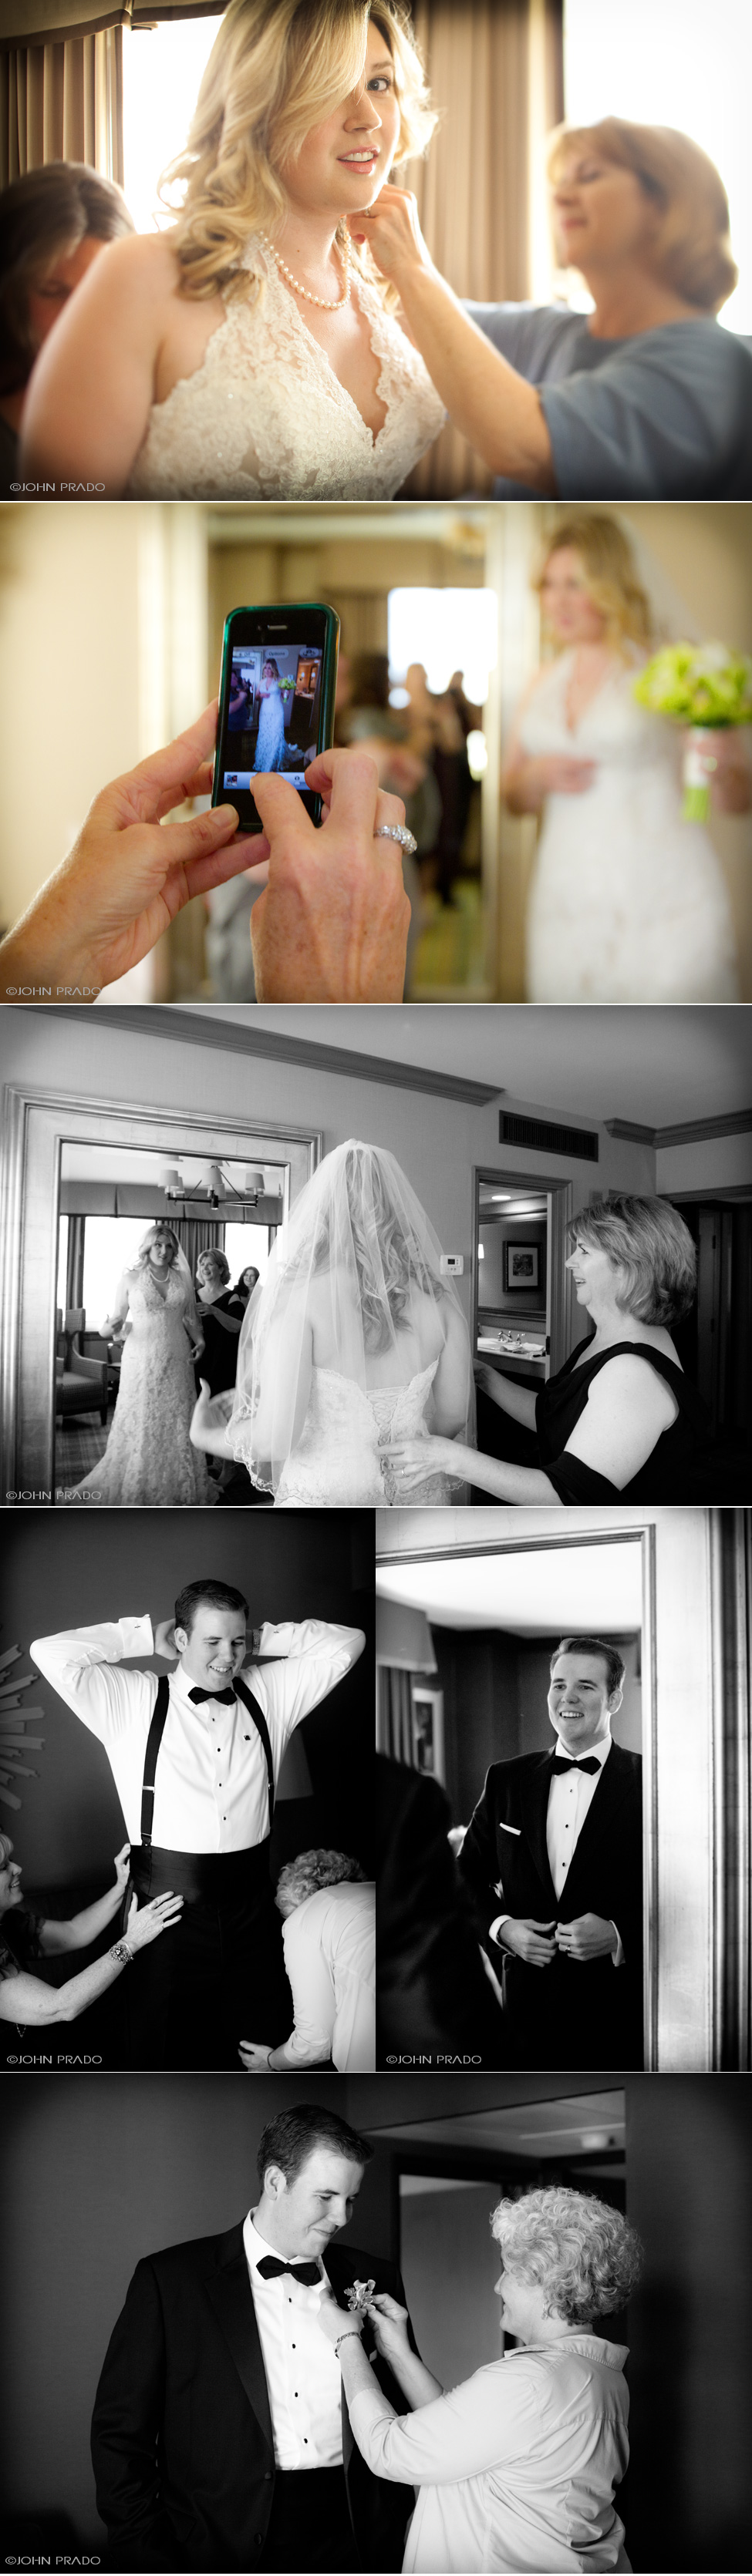 Wedding photos 